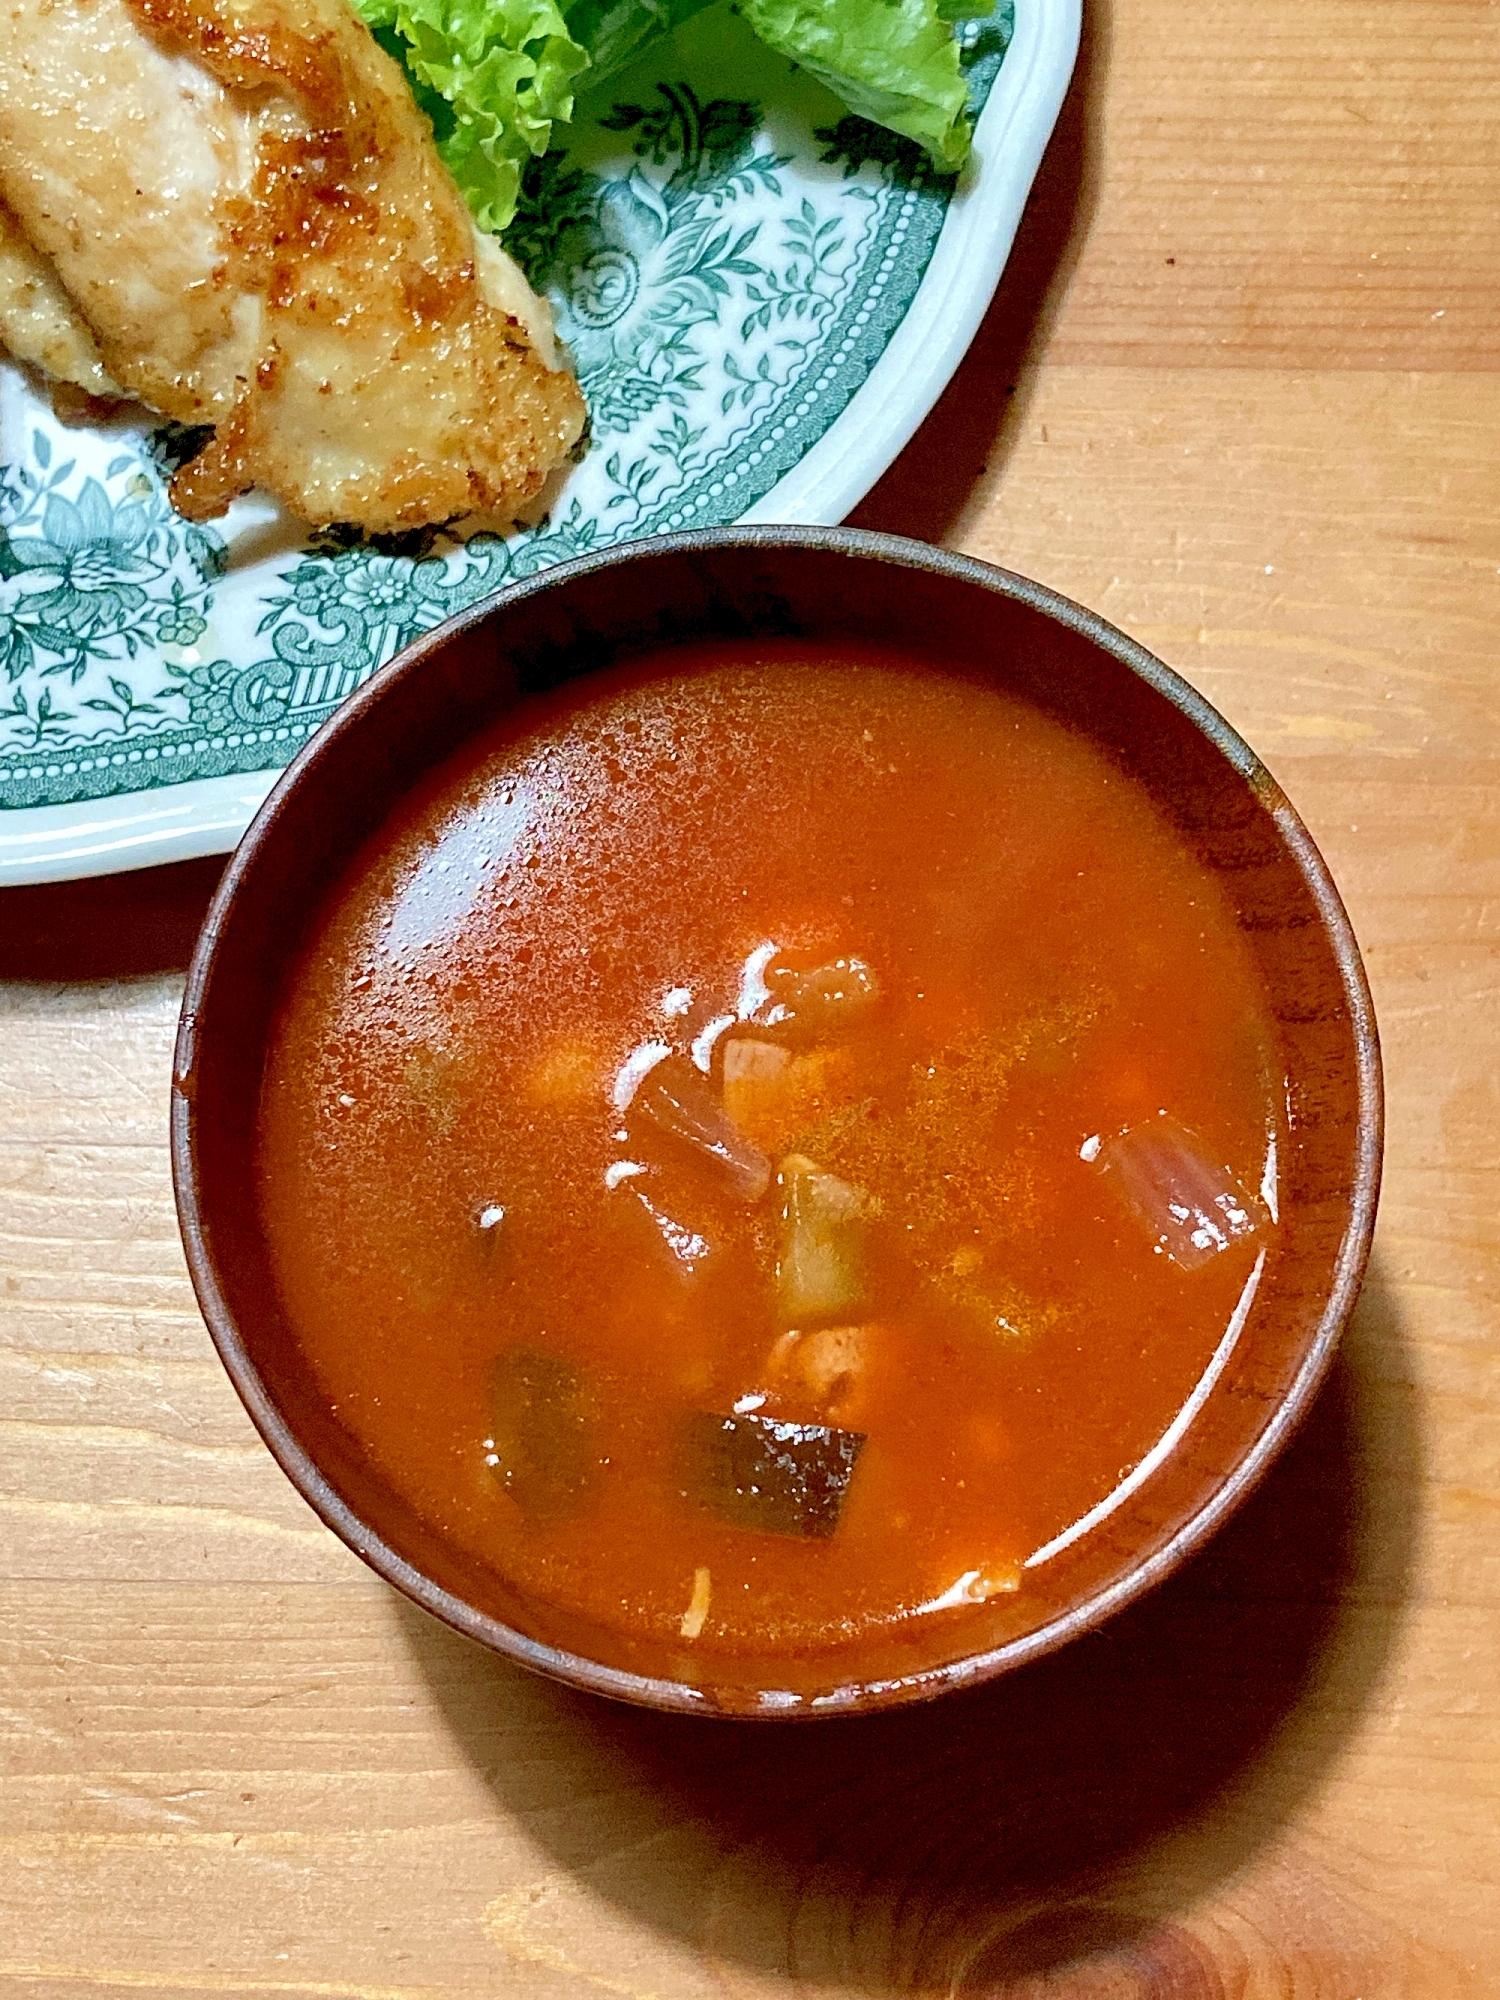 ひよこ豆と野菜のトマトスープ